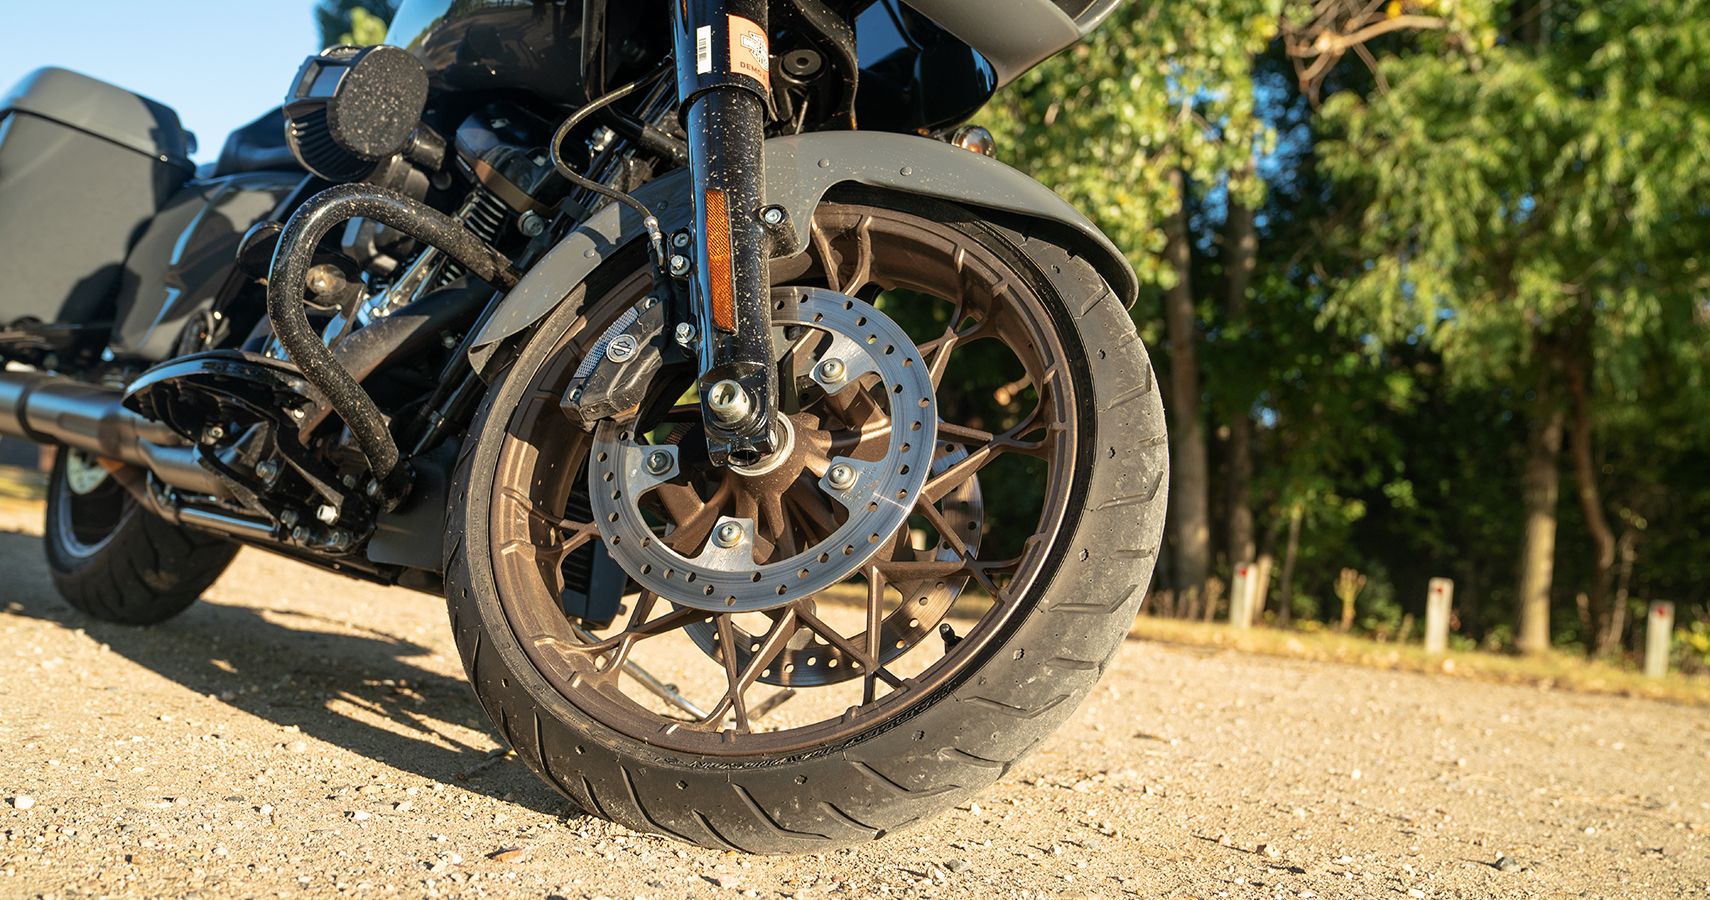 2022 Harley-Davidson Road Glide ST front wheel